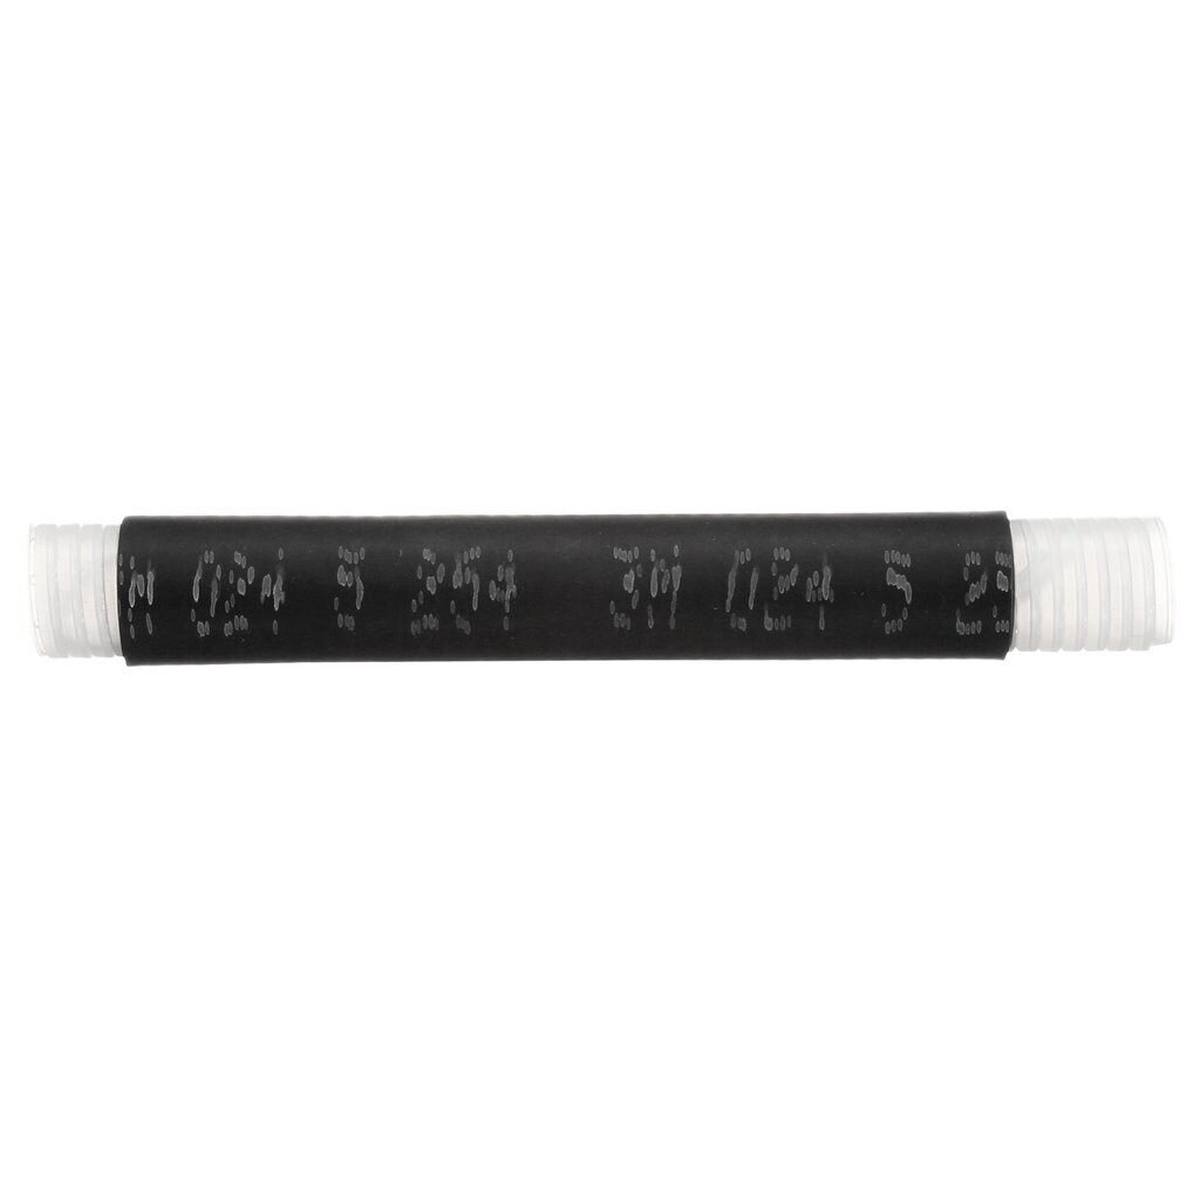 3M 8425.8 Cold-shrink tubing, EPDM, black, 10.1/20.9 mm, 203 mm